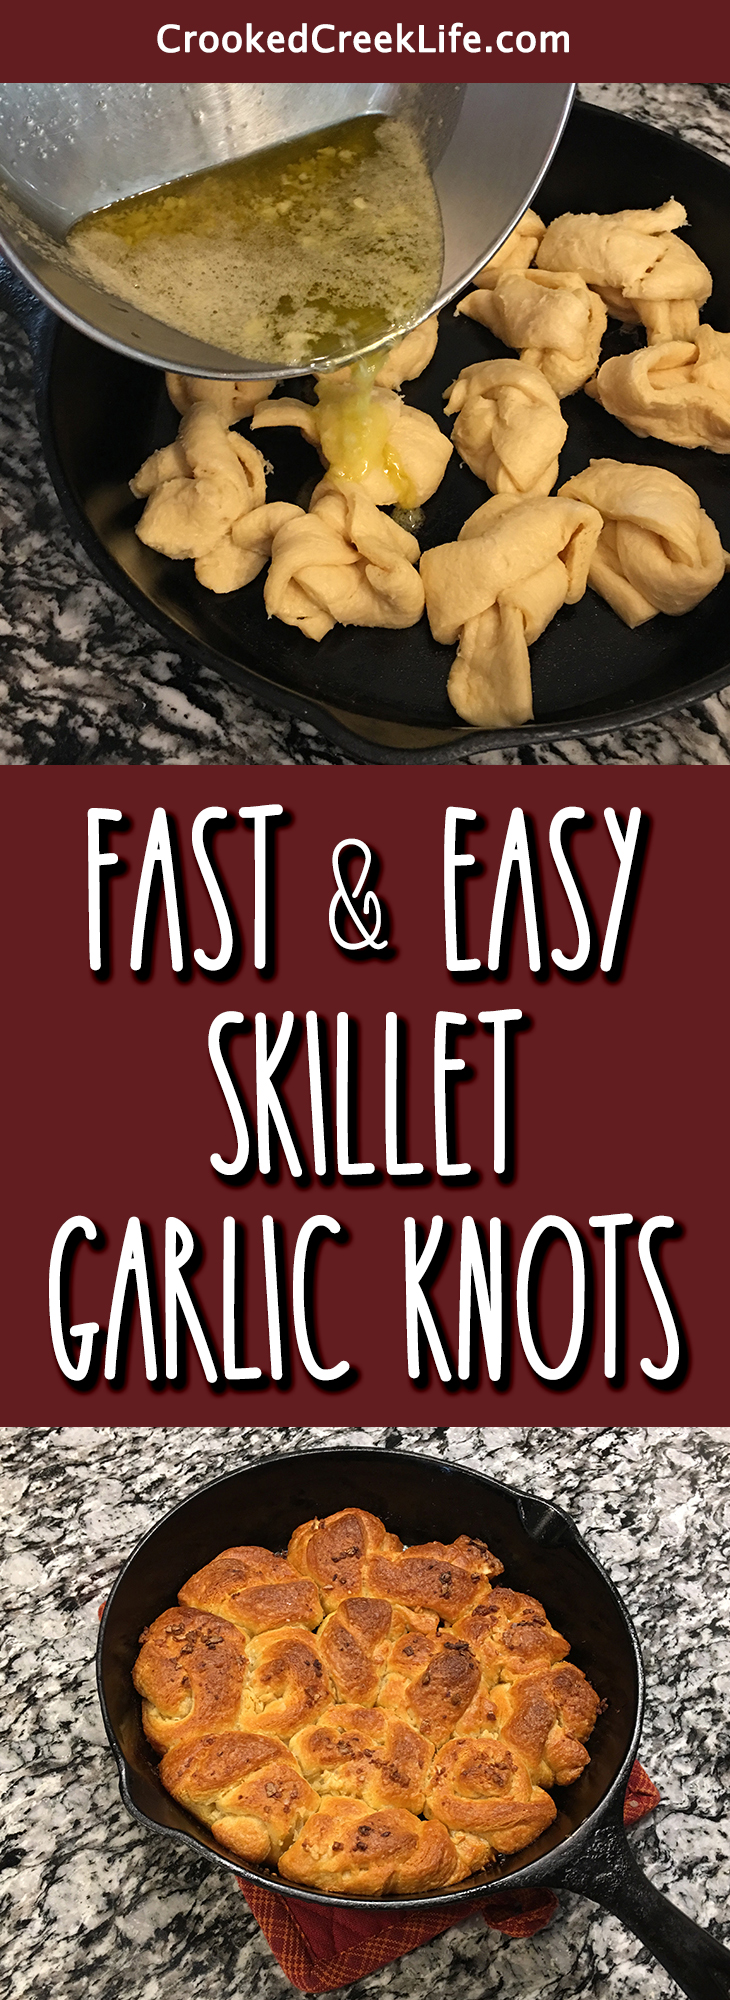 Fast & Easy Skillet Garlic Knots